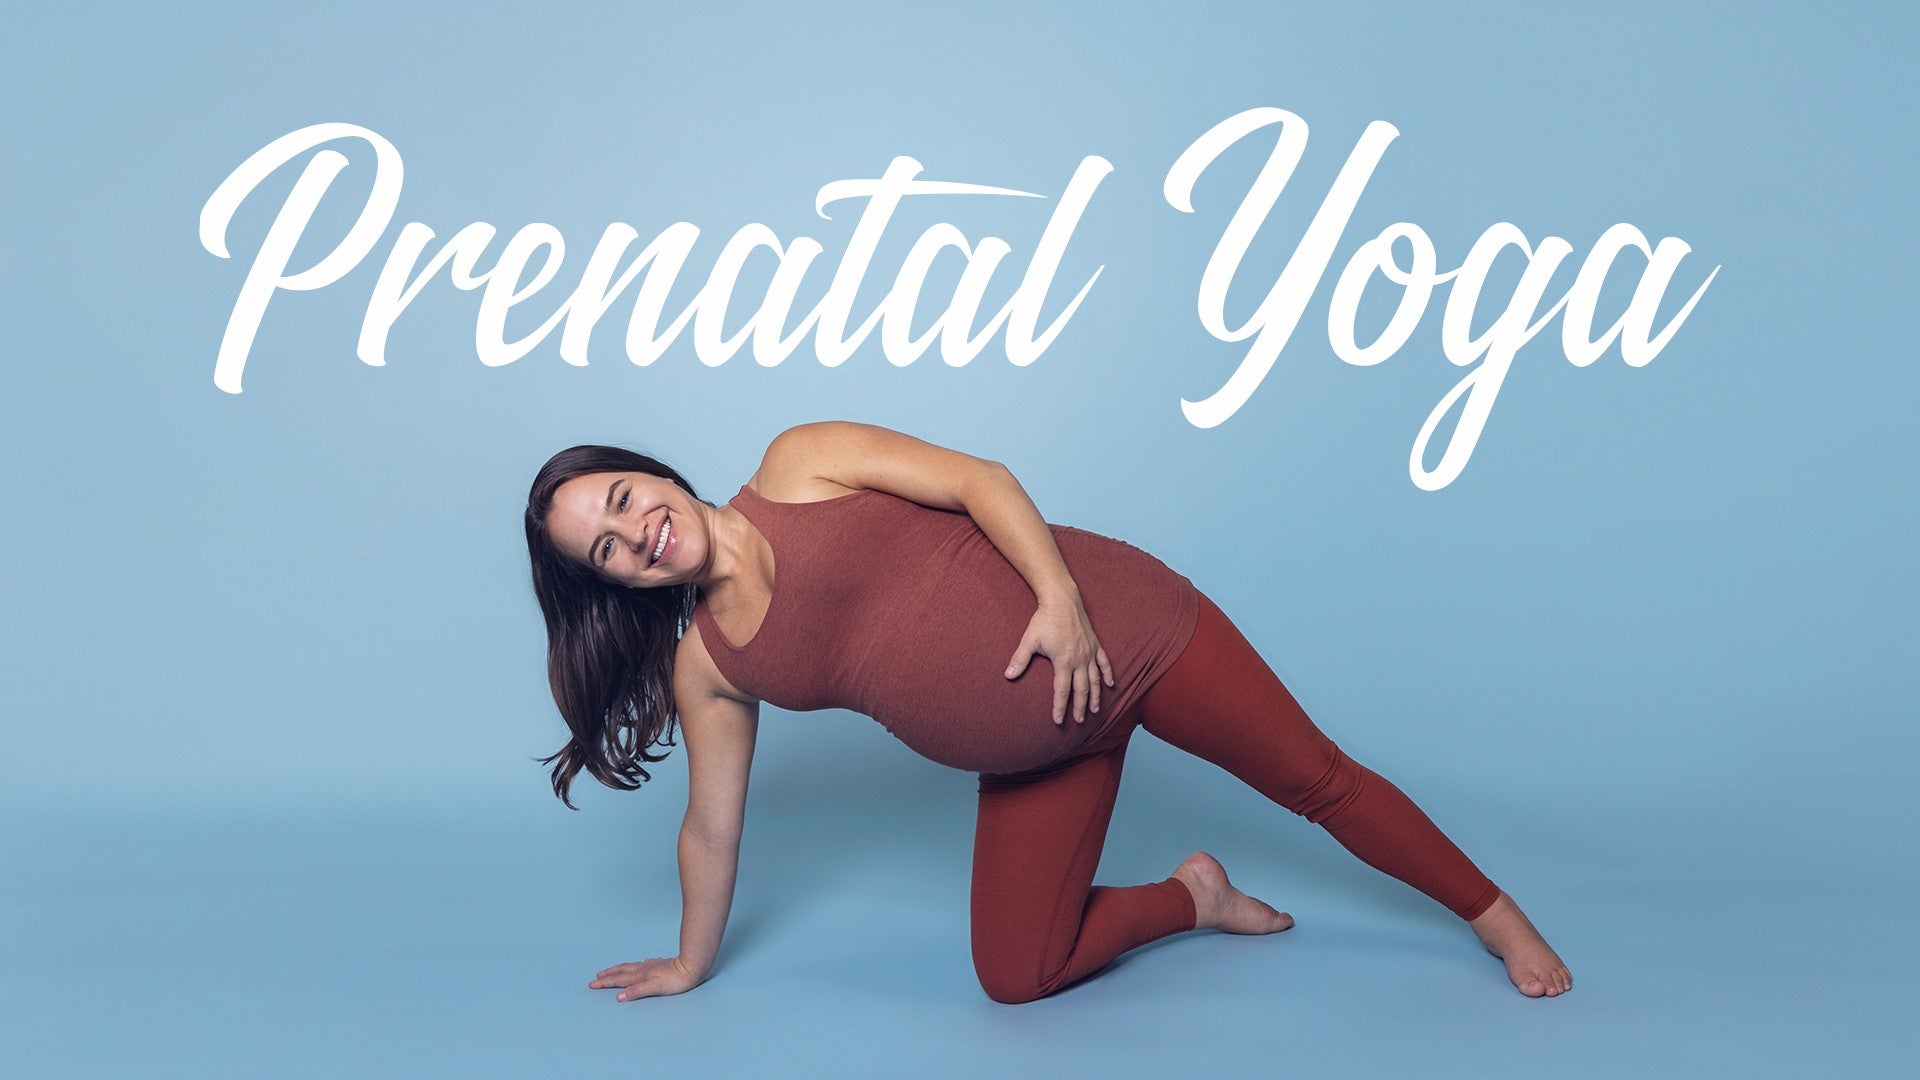 Prenatal Yoga Artwork